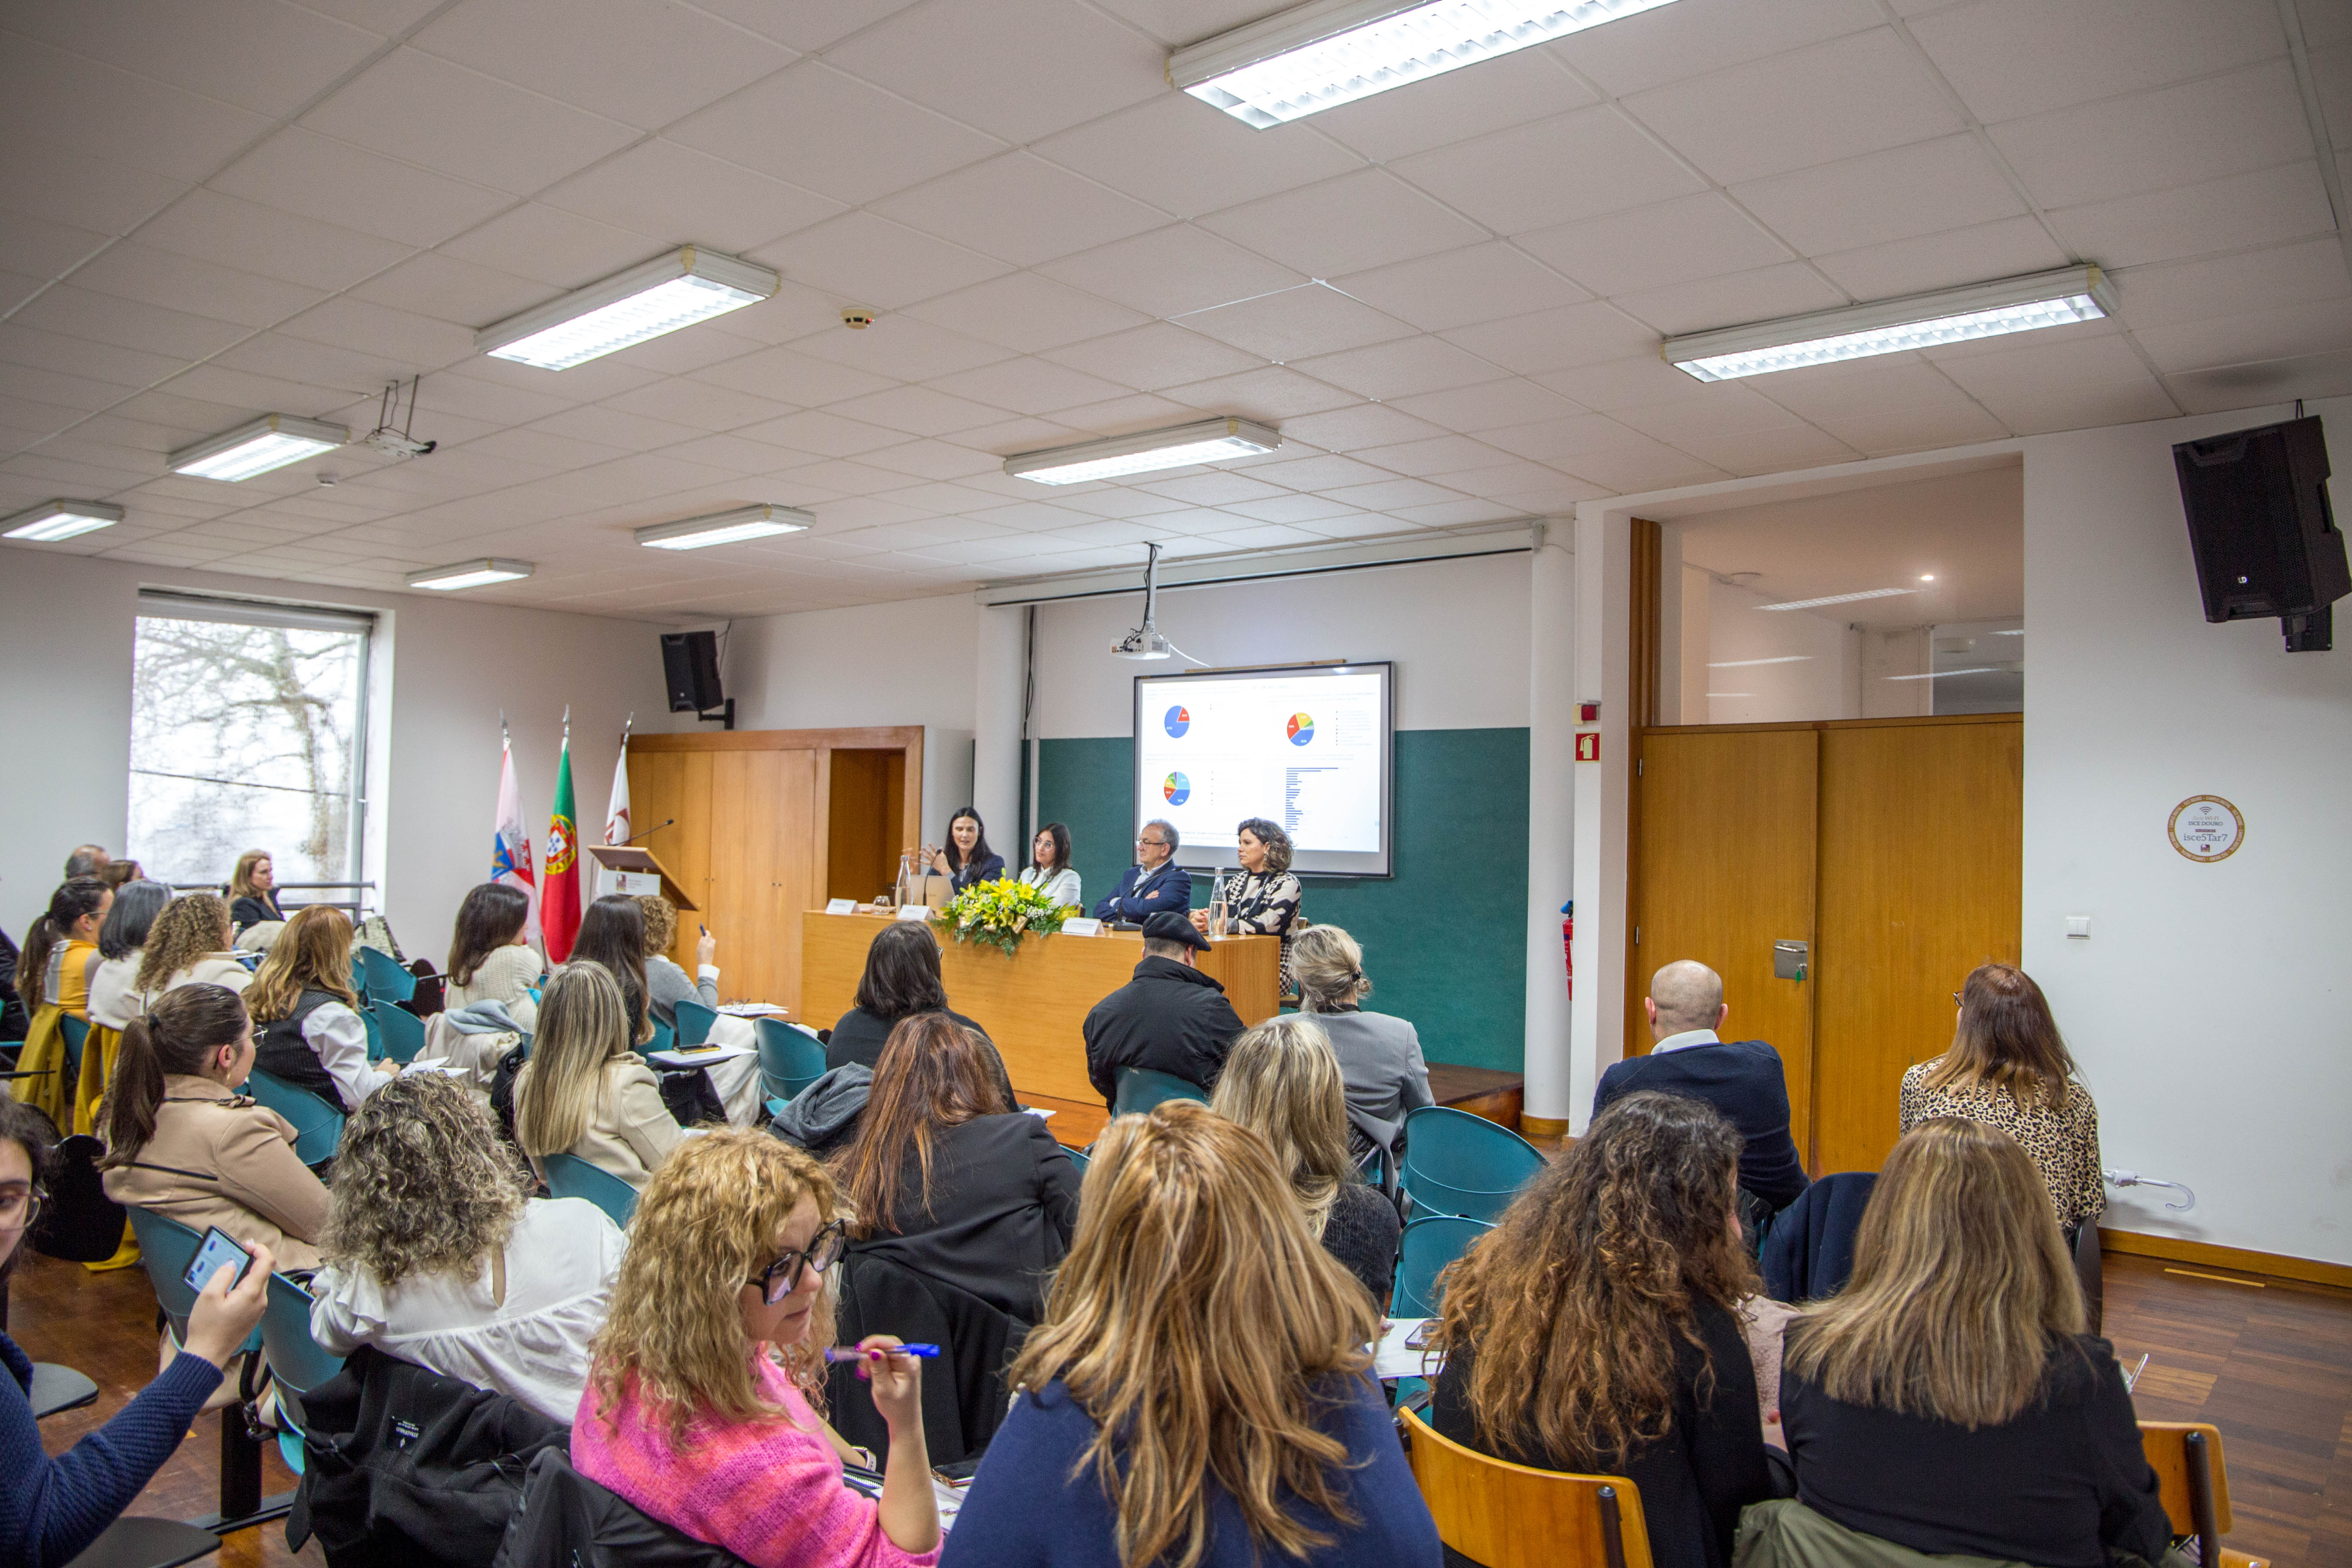 ISCE Douro recebe o II Encontro Internacional Educação Social pelo Mundo